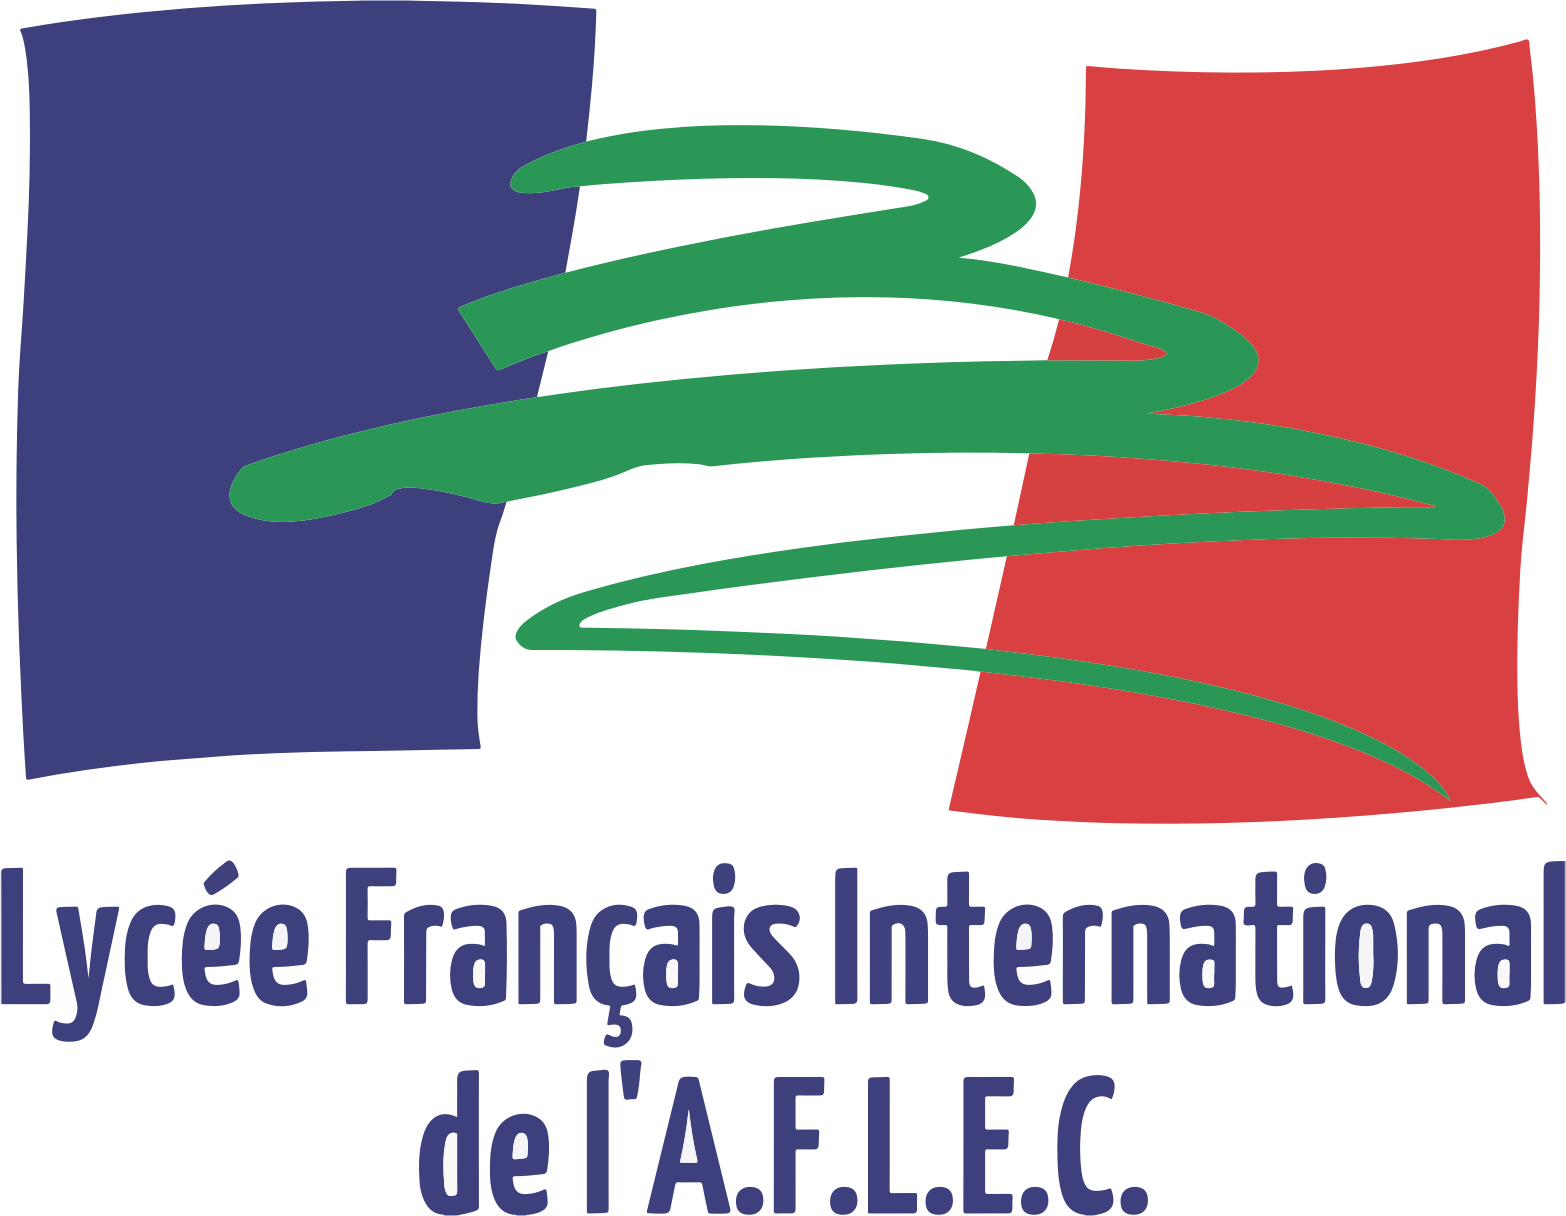 LFI Aflec logo.png